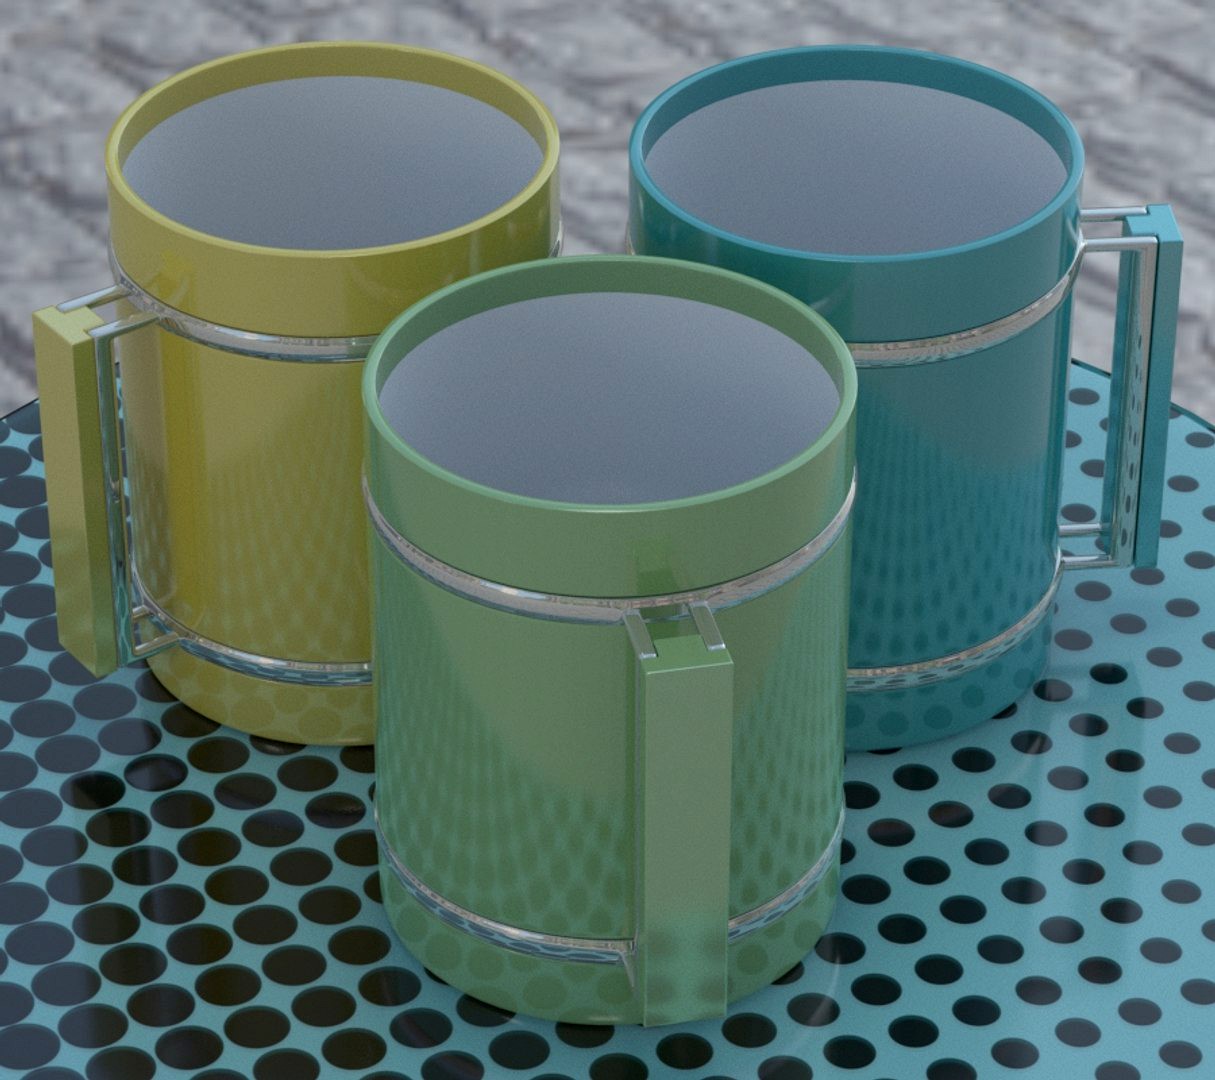 Shiny porcelain cup